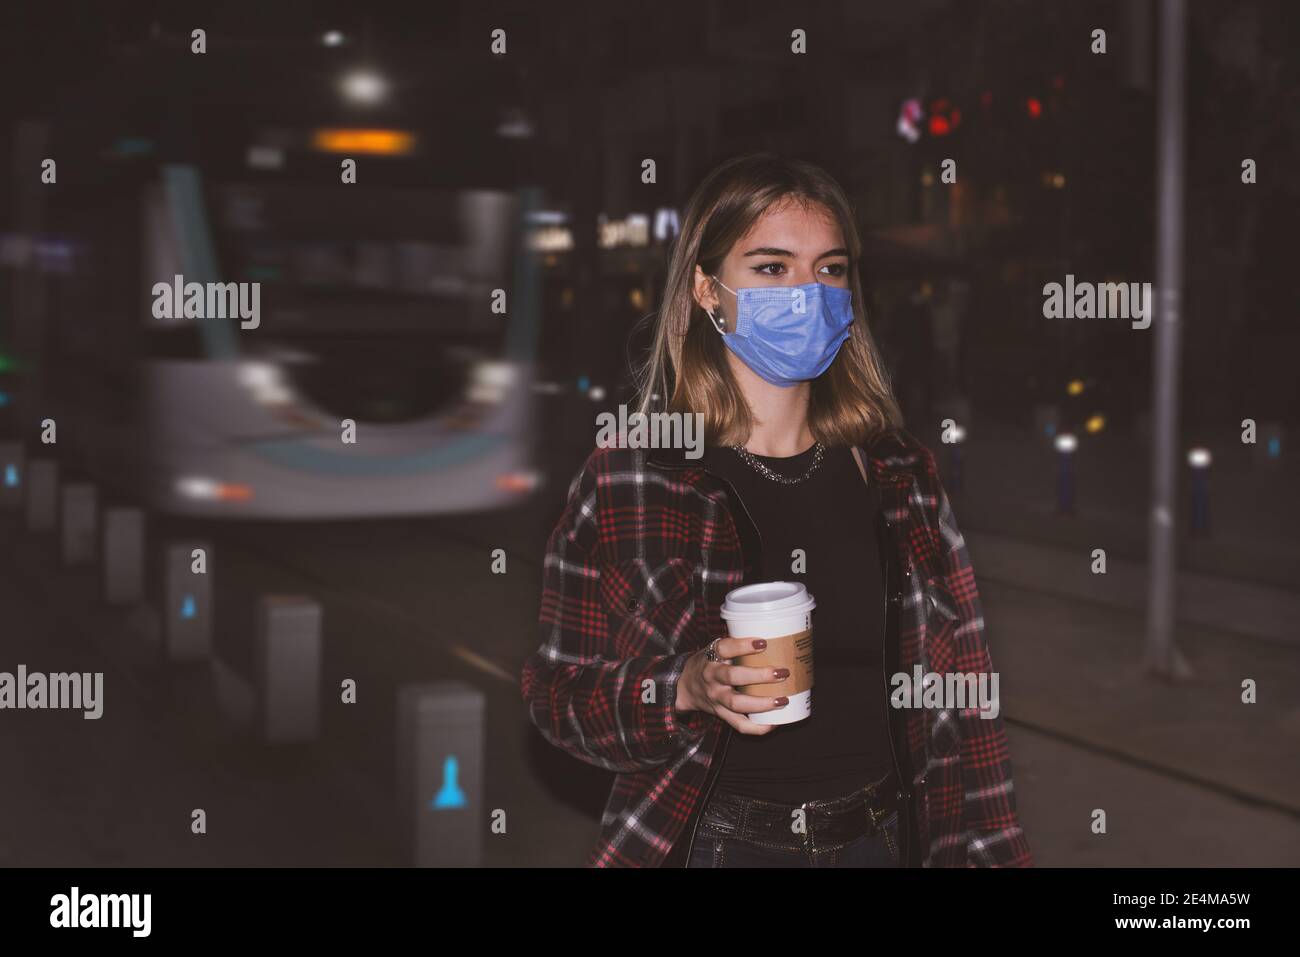 Une adolescente avec un masque facial médical marchant dans une rue avec un café à emporter sur sa main, il y a un tram en arrière-plan la nuit. Banque D'Images